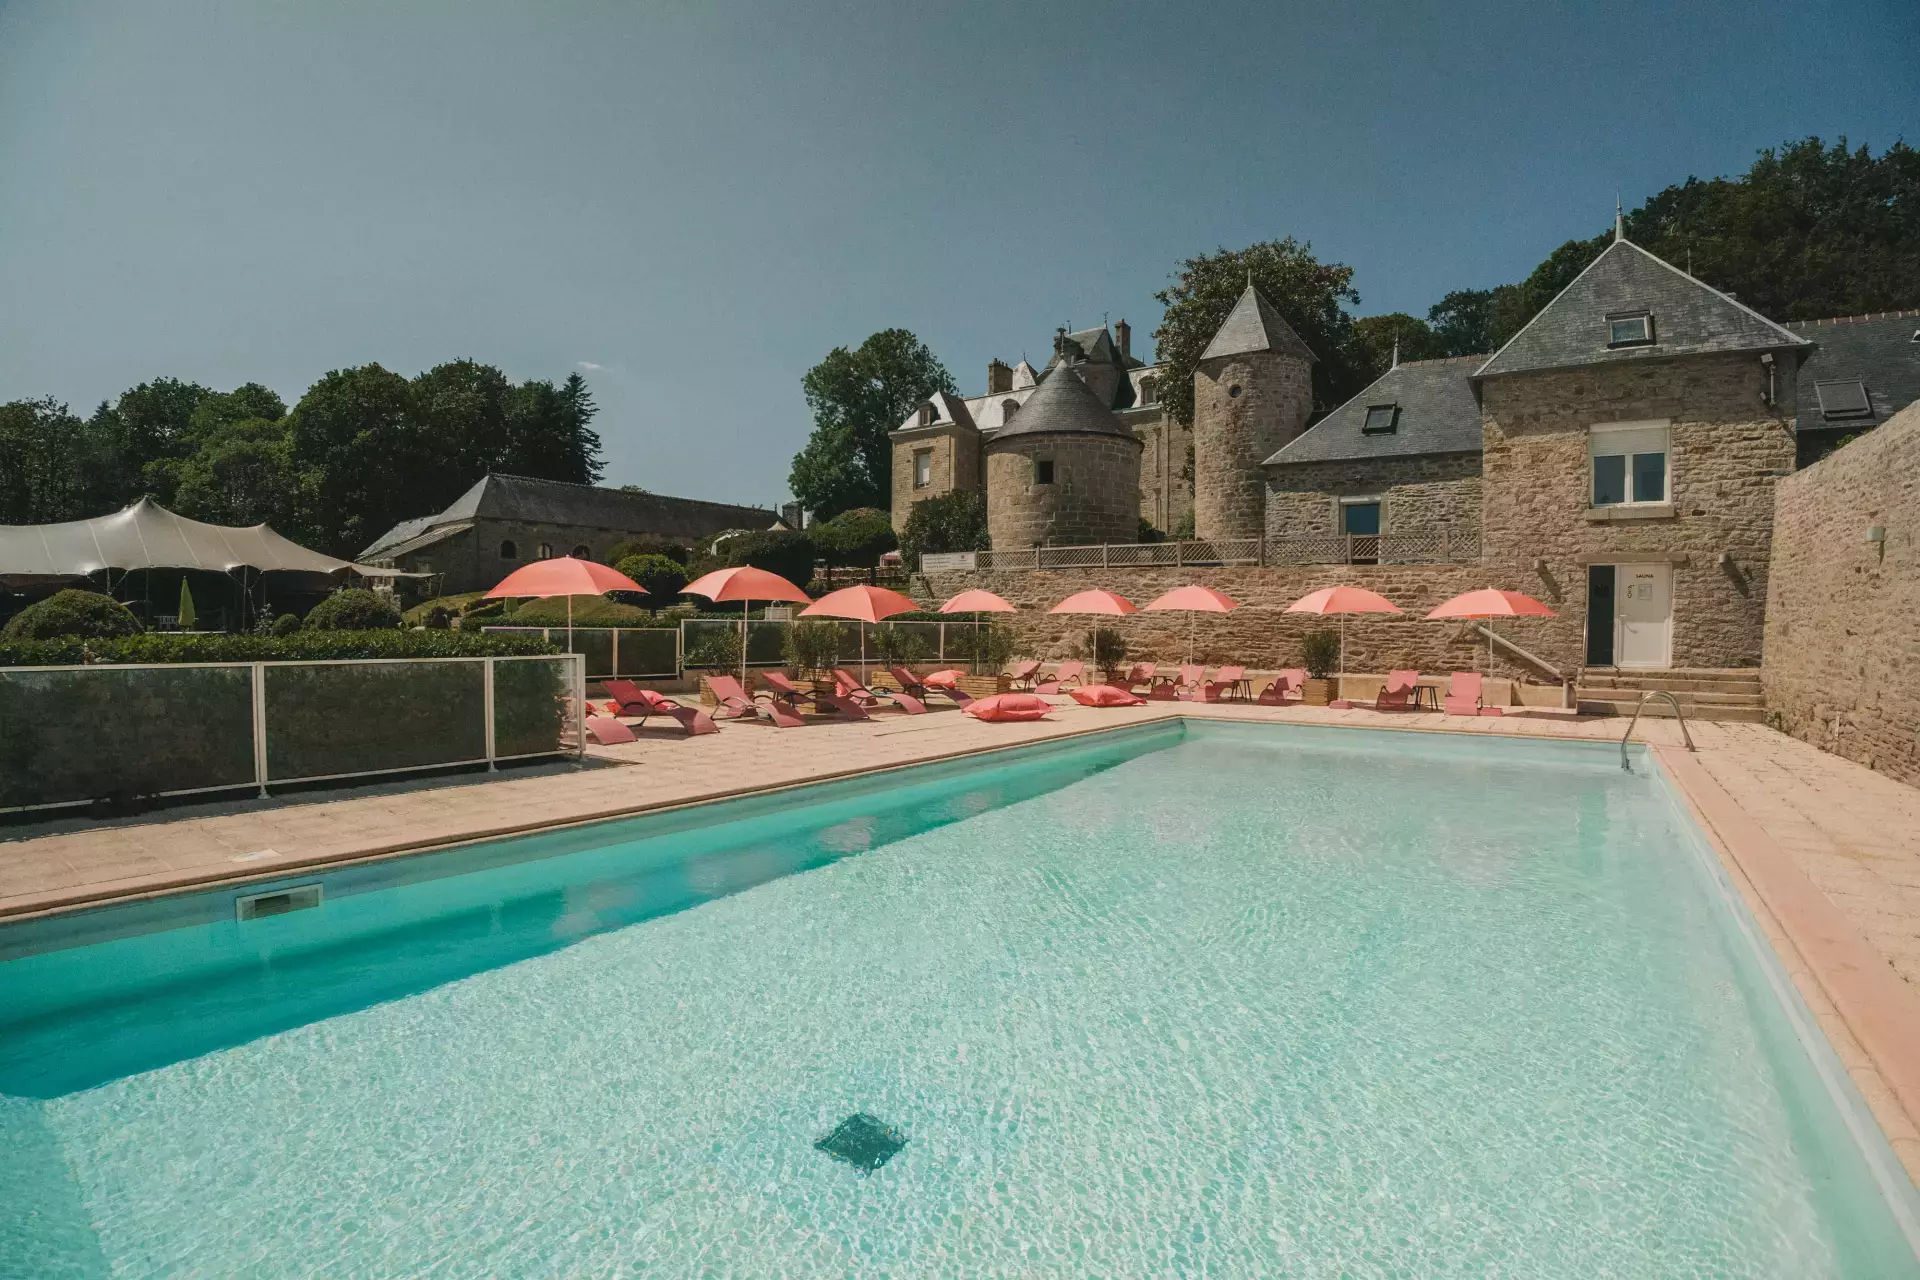 Hôtel avec piscine chauffée | Manoir de Kerhuel, hôtel 4 étoiles près de Quimper